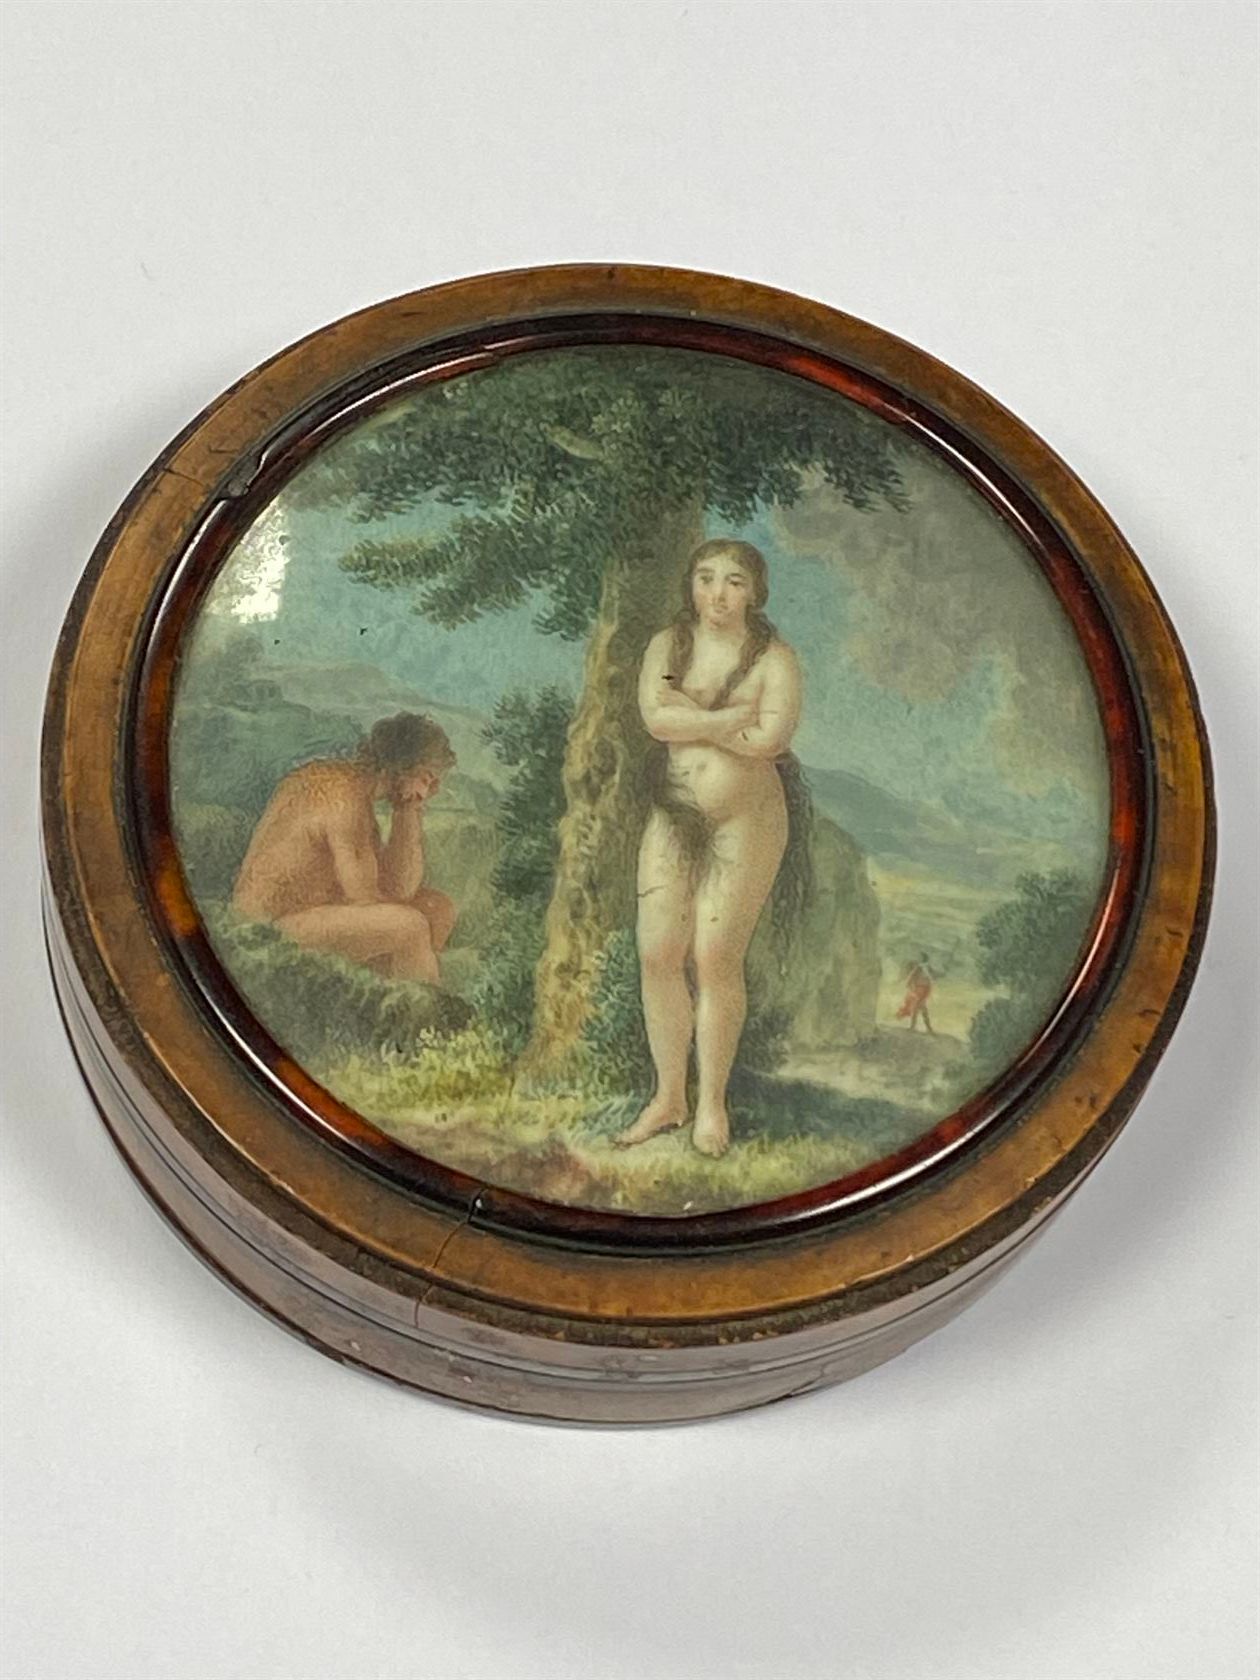 Null 胡桃木毛刺贴面的盒子，盖子上装饰着象牙上的微型画，代表亚当和夏娃从天堂出来。19世纪初。直径8厘米。